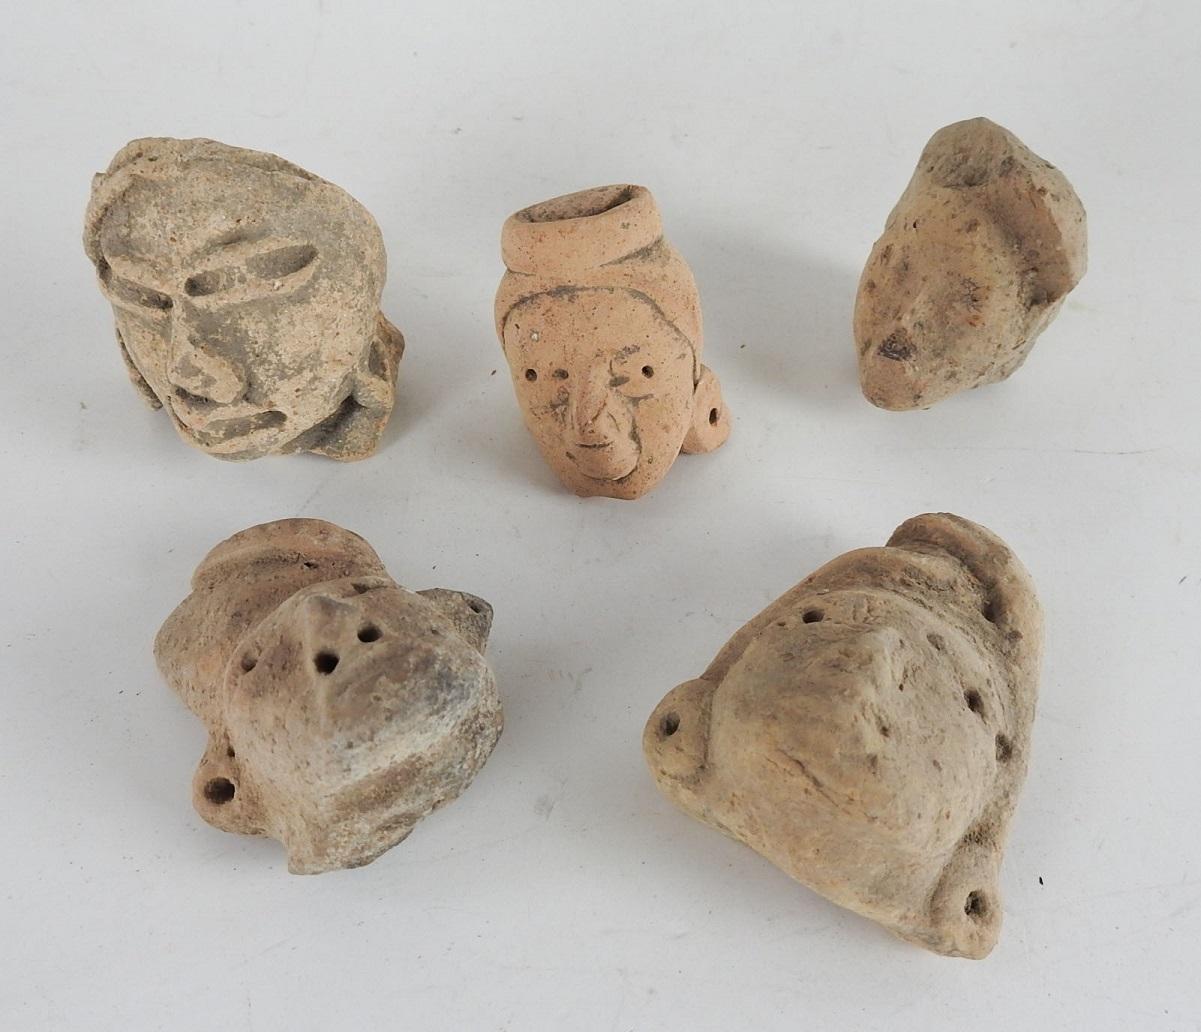 Collectional de 5 têtes de poterie Pre-Columbian.  La plus grande mesure 2,5